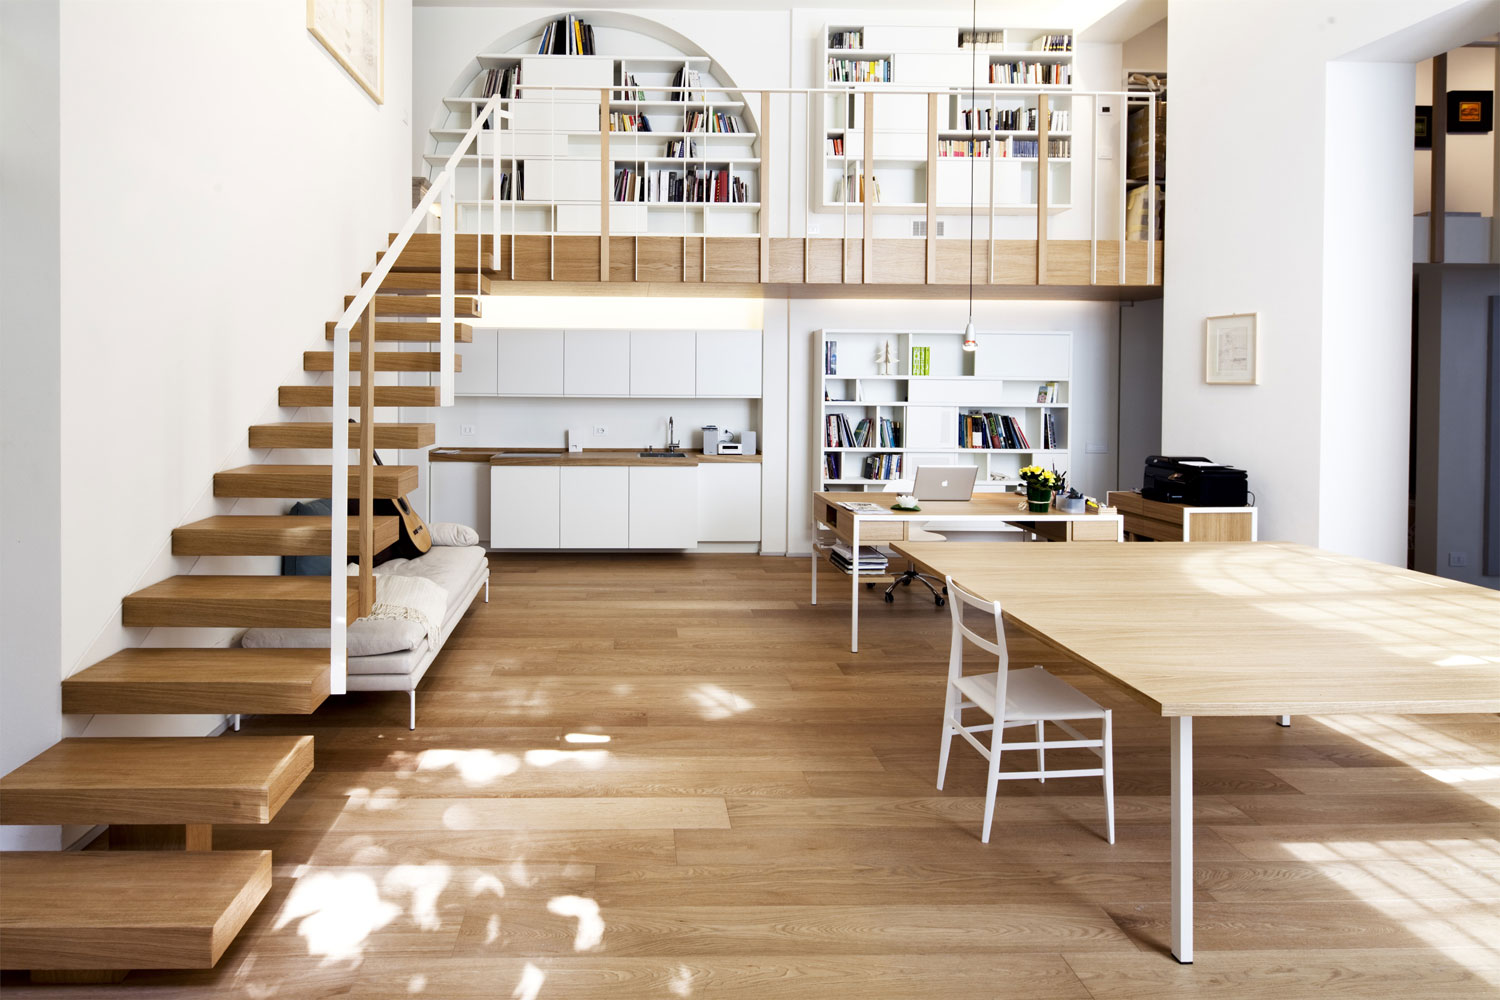 Cách chọn sàn gỗ chuẩn thiết kế mang lại vẻ đẹp hoàn hảo cho ngôi nhà bạn